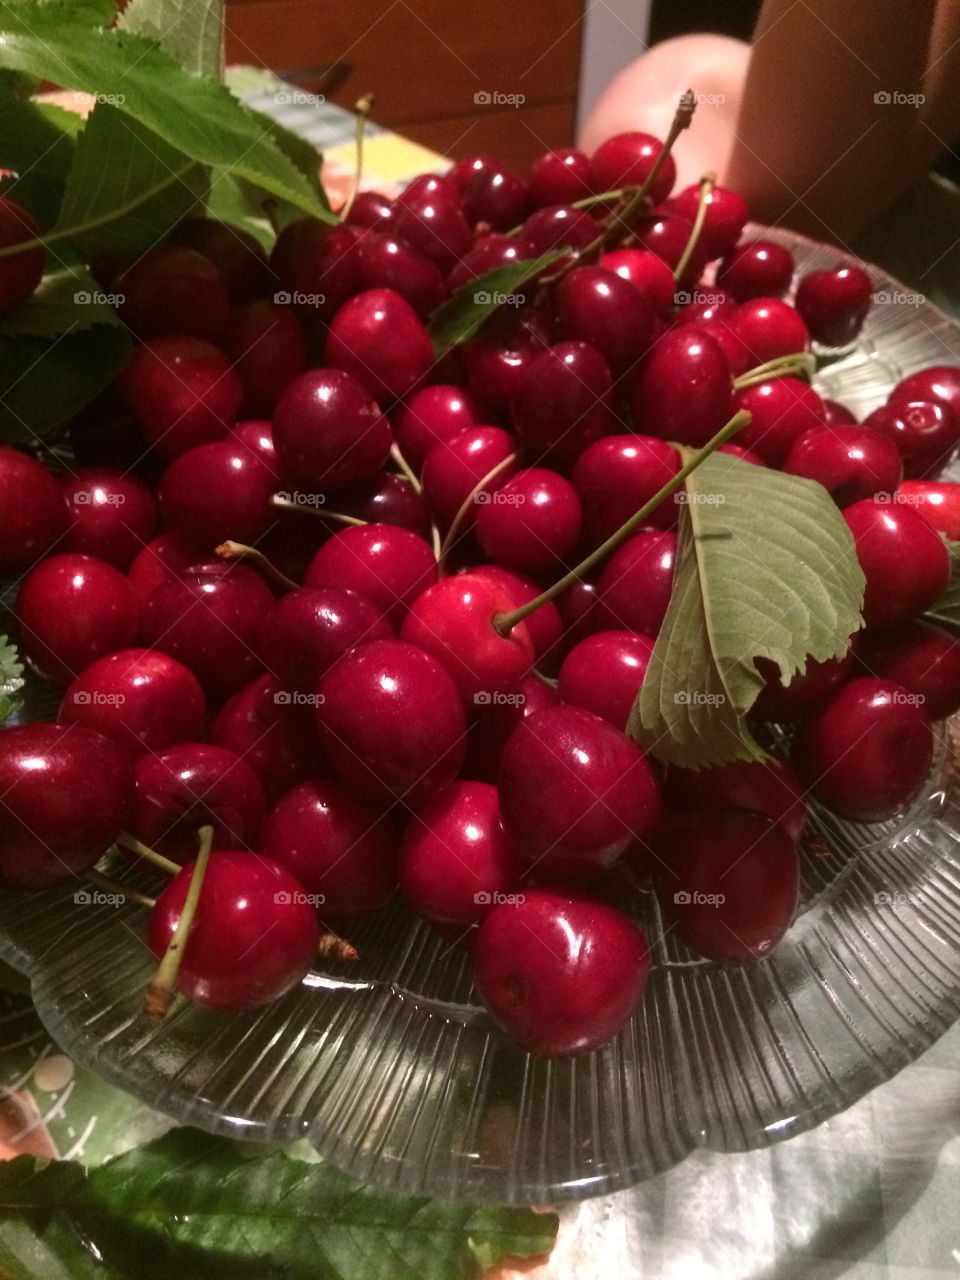 Delicious cherries. 